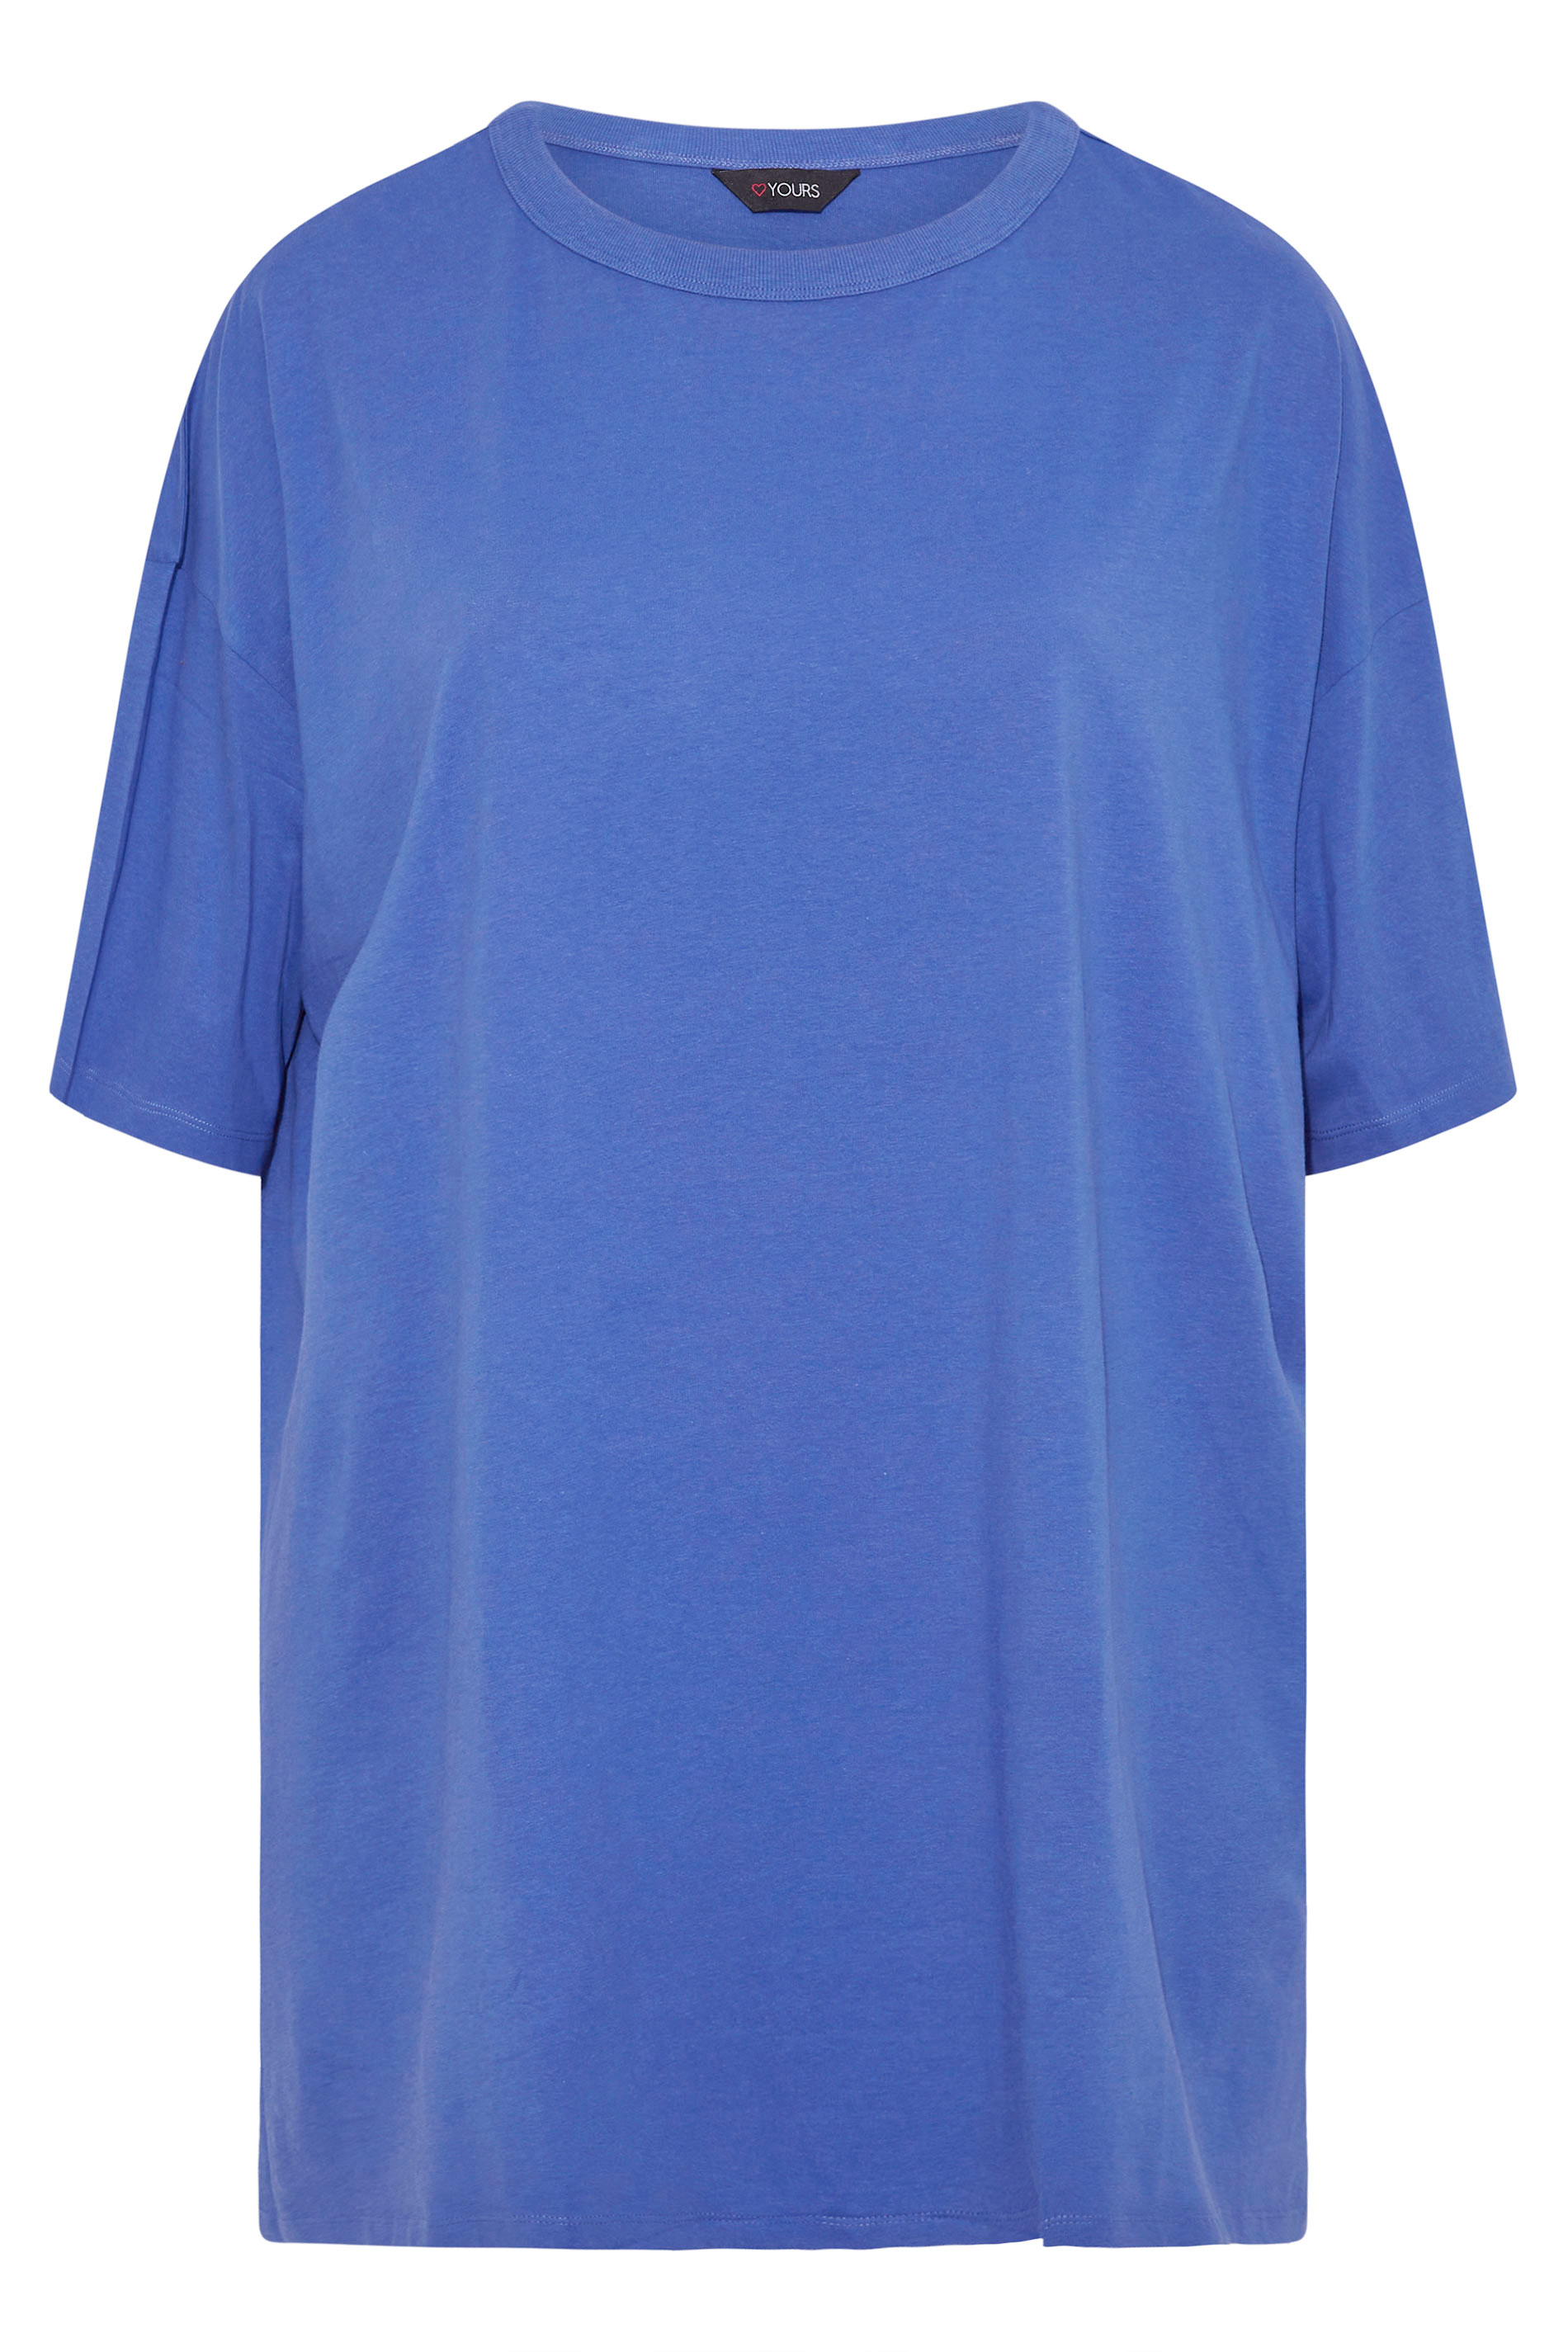 Gildan t-shirt Taille L Bleu Sarcelle Vert Malibu Manches Courtes 100% coton 